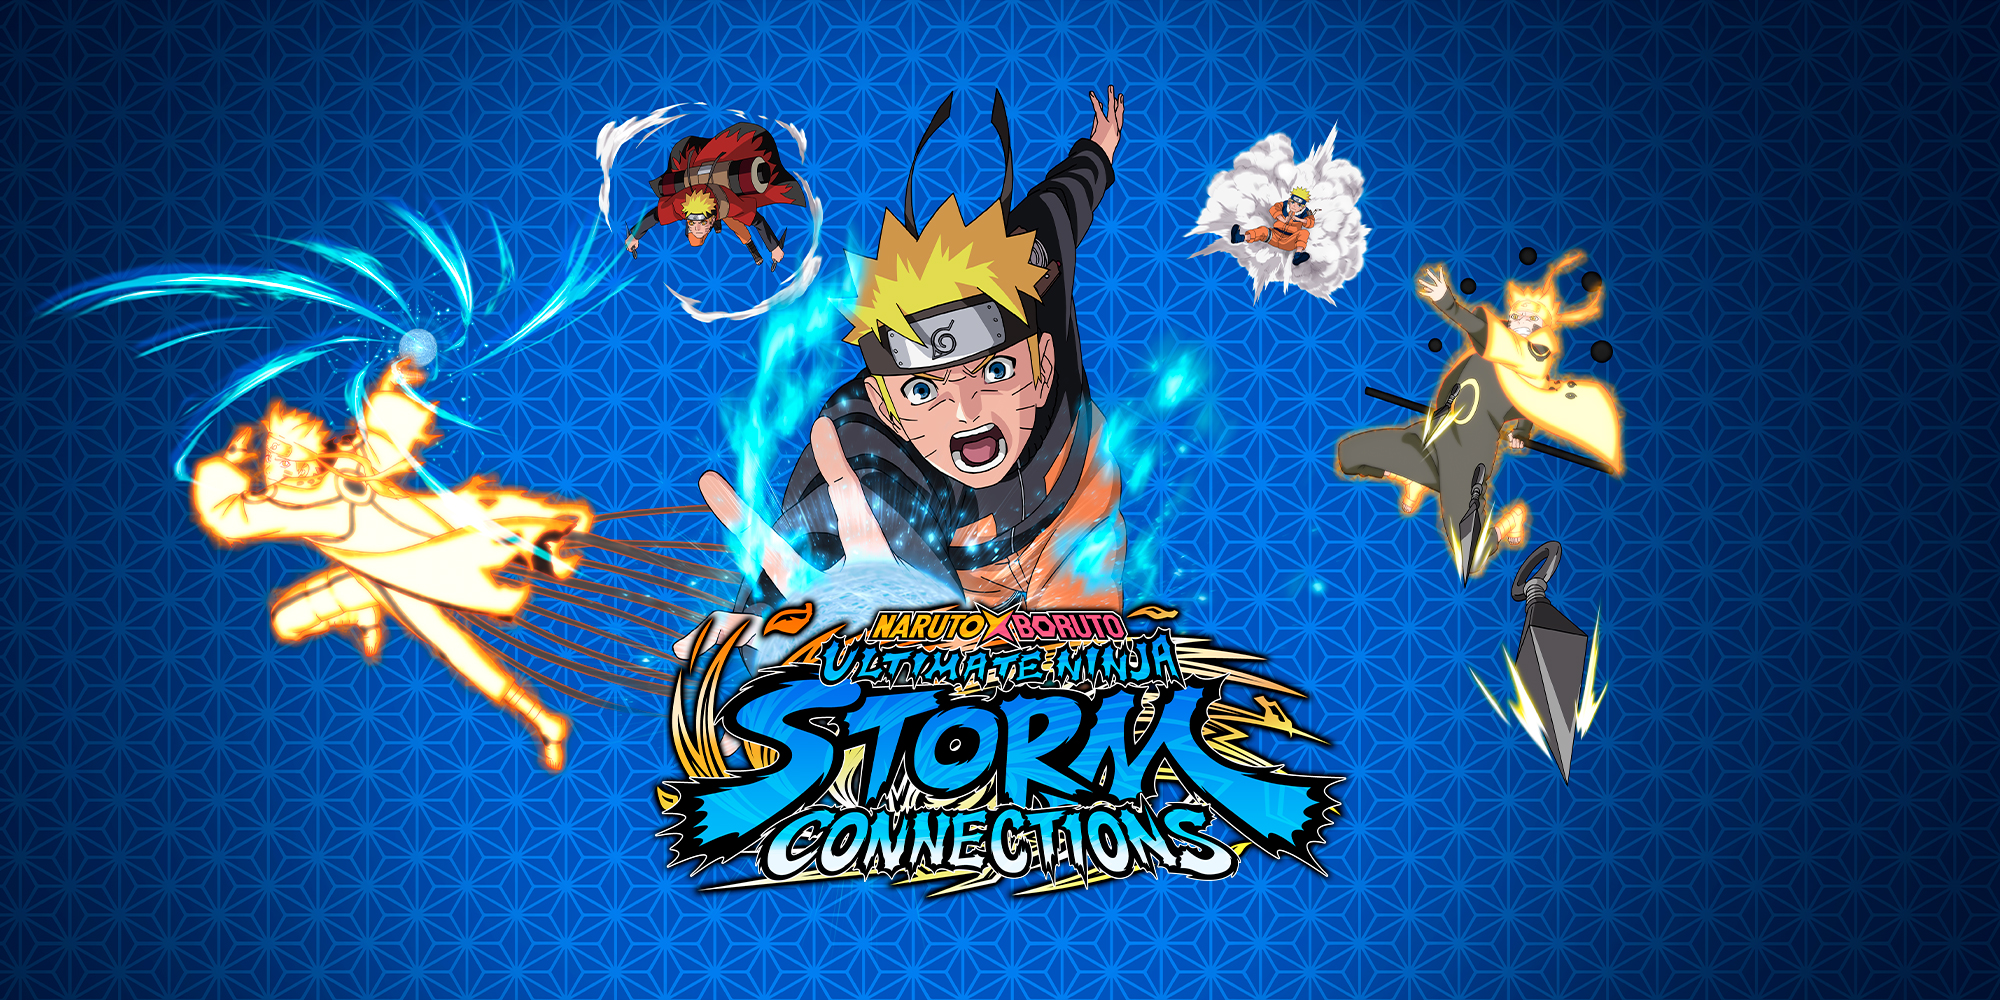 Naruto x Boruto Ultimate Ninja Storm Connections Review – Ein völlig überflüssiges Spiel